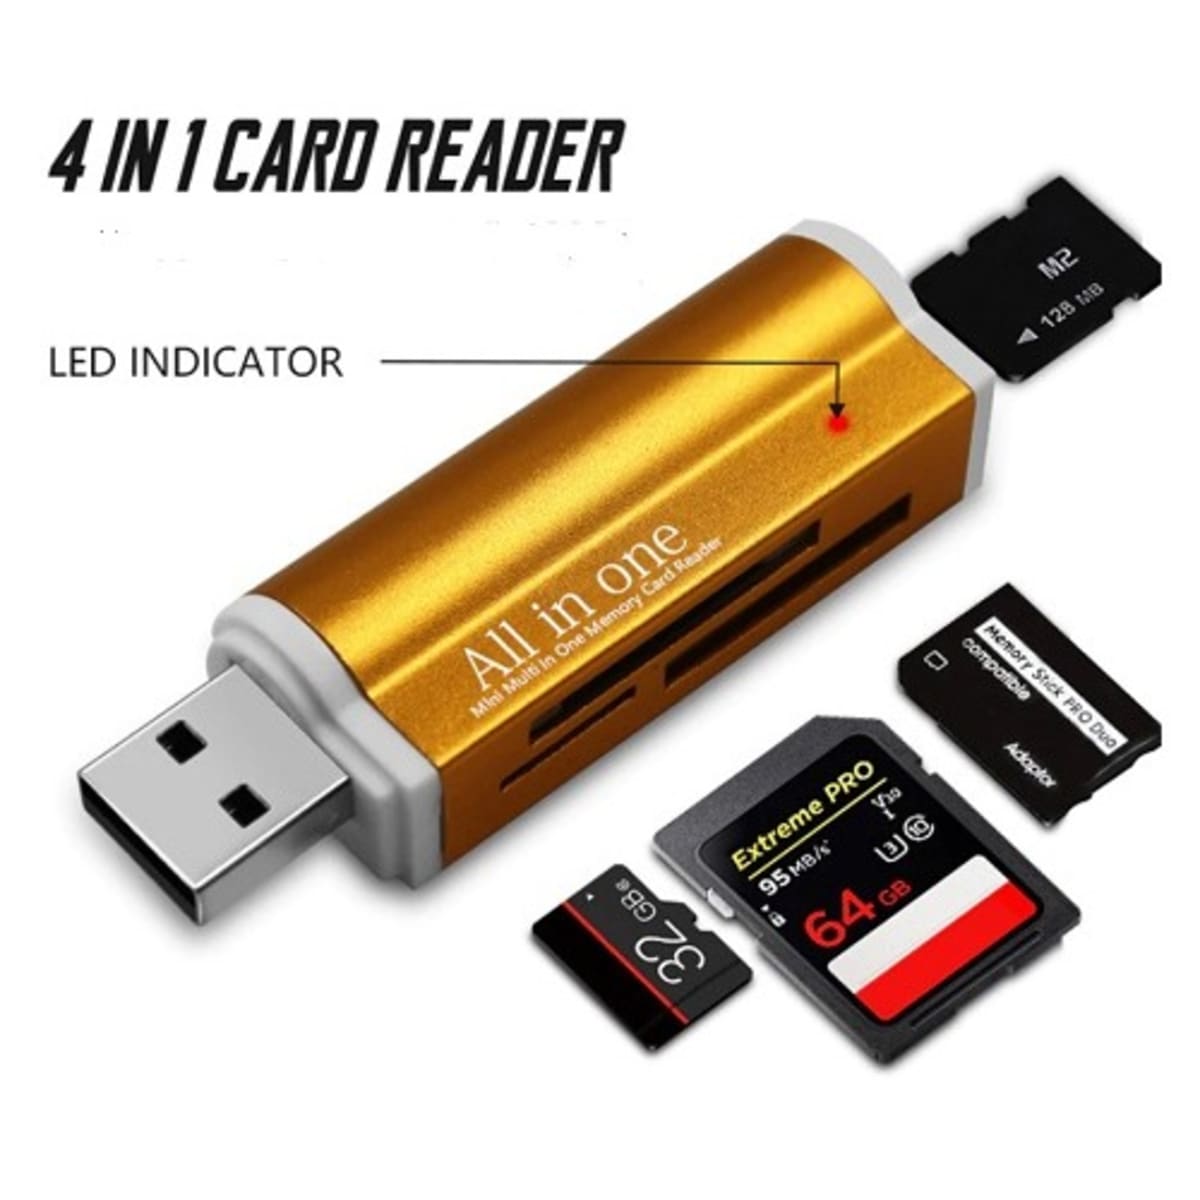 USB Multi Media Memory Card Reader - USB Card Readers